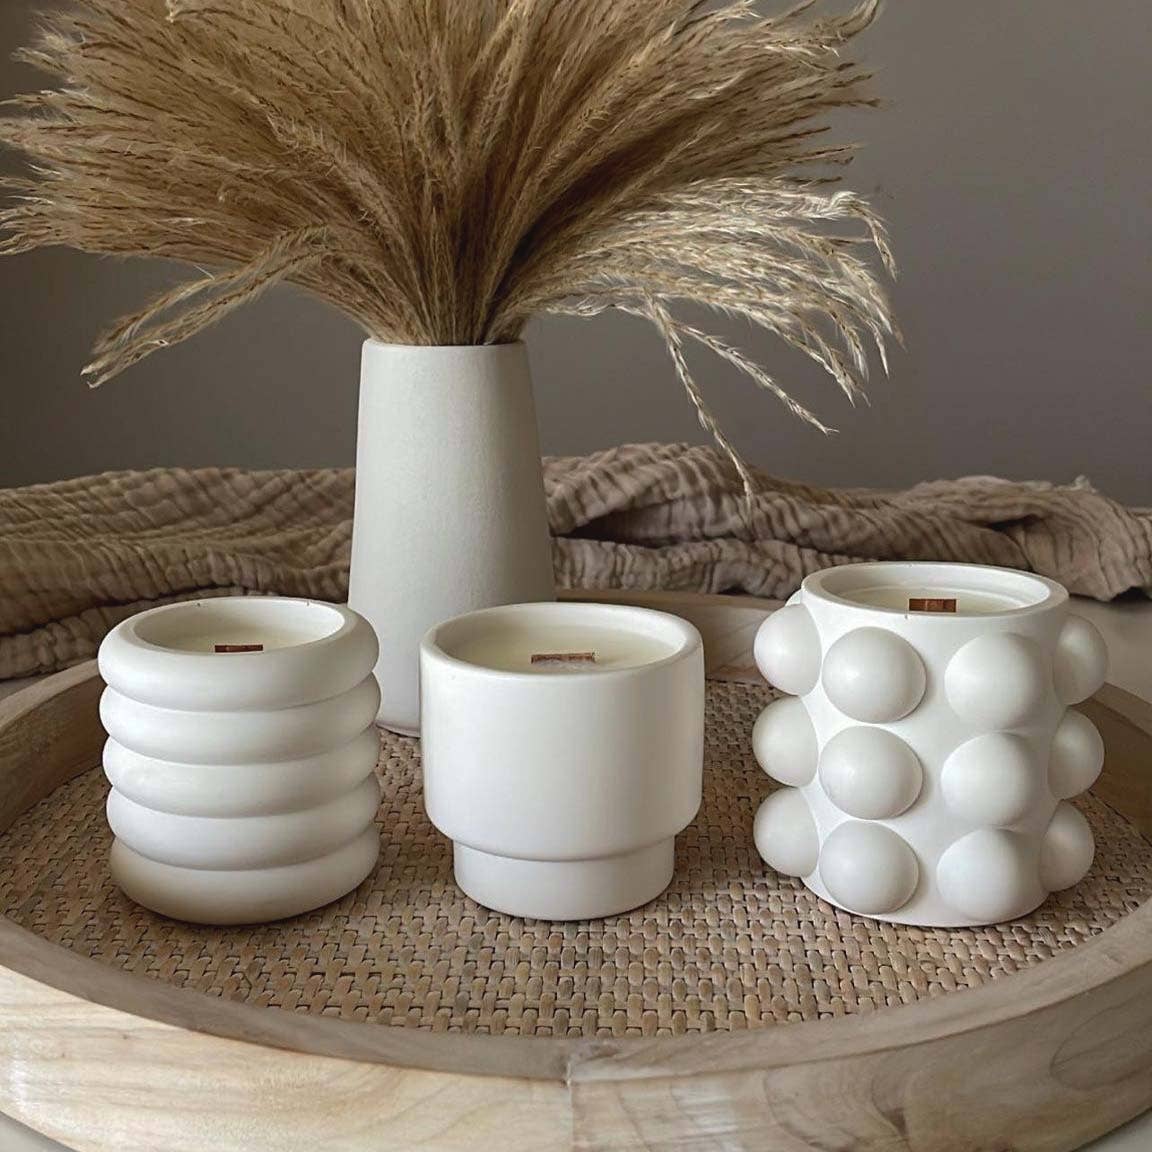 Bonsaï artificiel cyprès de bienvenue - Bonsaï artificiel et pots en  céramique noire - Pour salle de bain, maison, cuisine, bureau